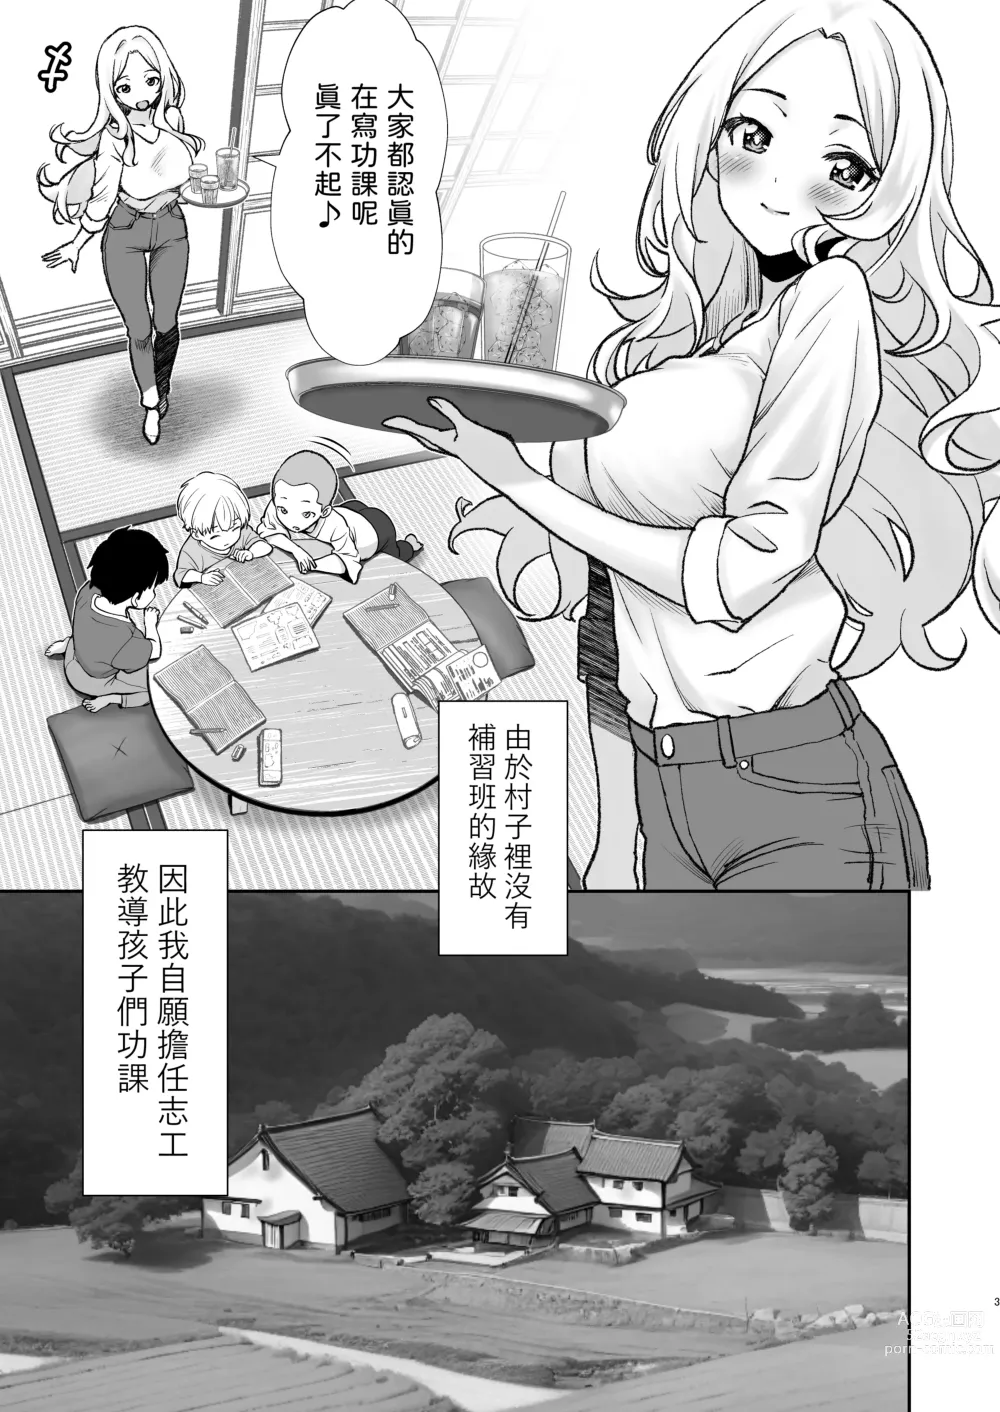 Page 3 of doujinshi Mura ni wa Juku ga Nai no de Watashi ga Benkyou wo Oshiete-imasu.